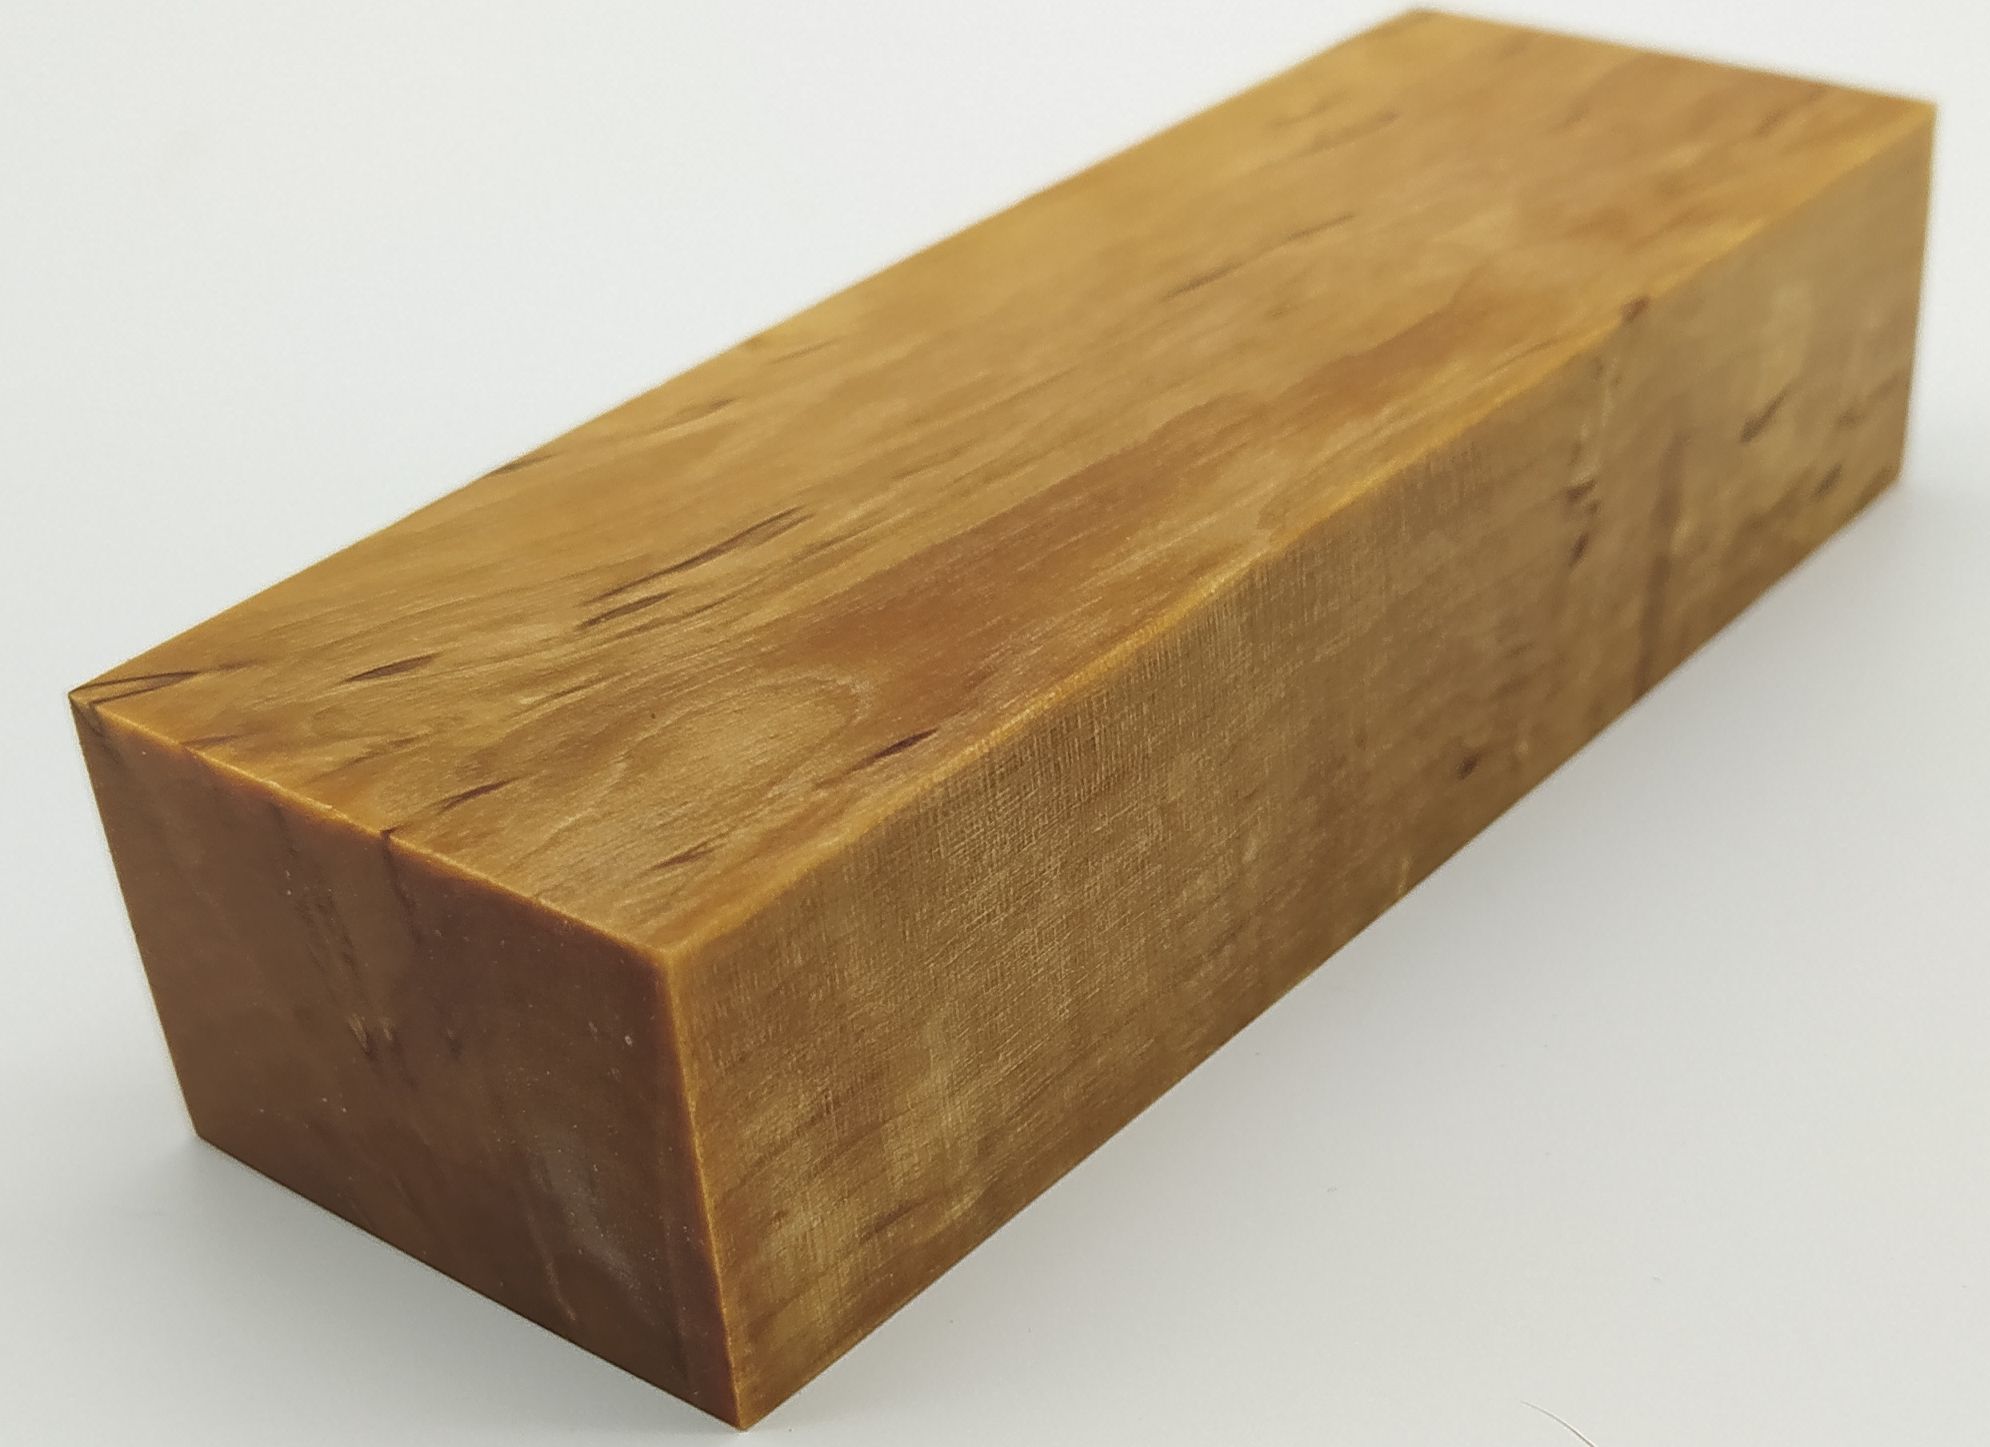 Stabilizované dřevo -  124 x 42 x 28 mm Karelská bříza